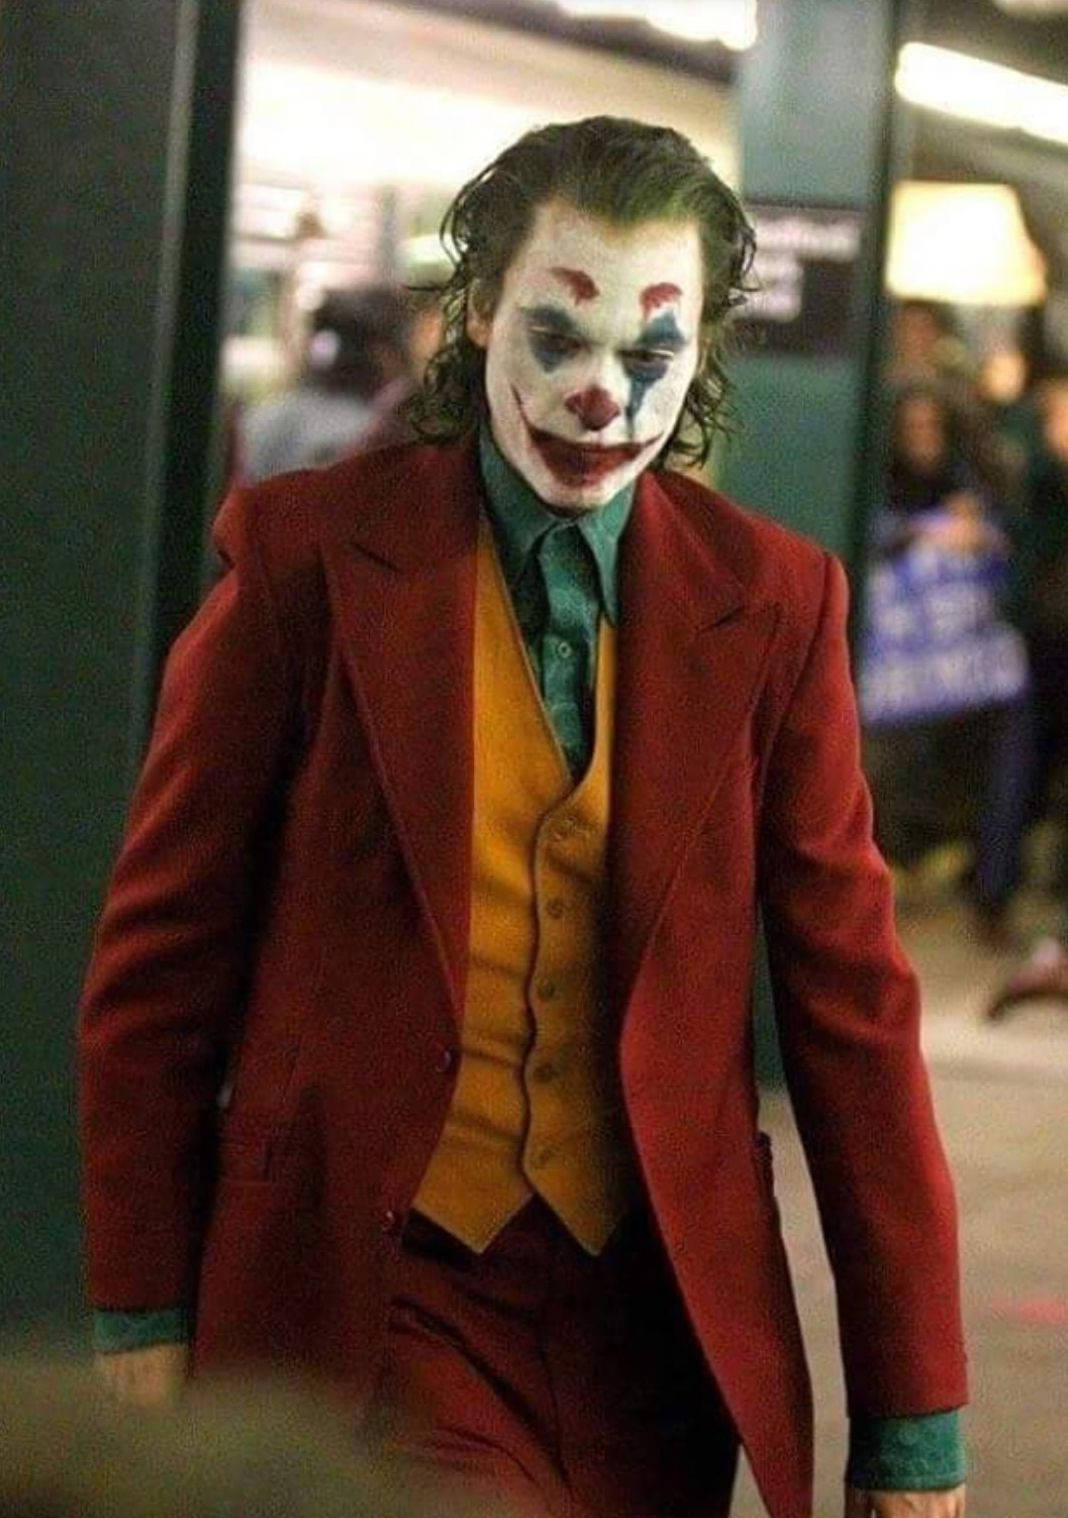 Joker 2019 Serious Face Wallpaper